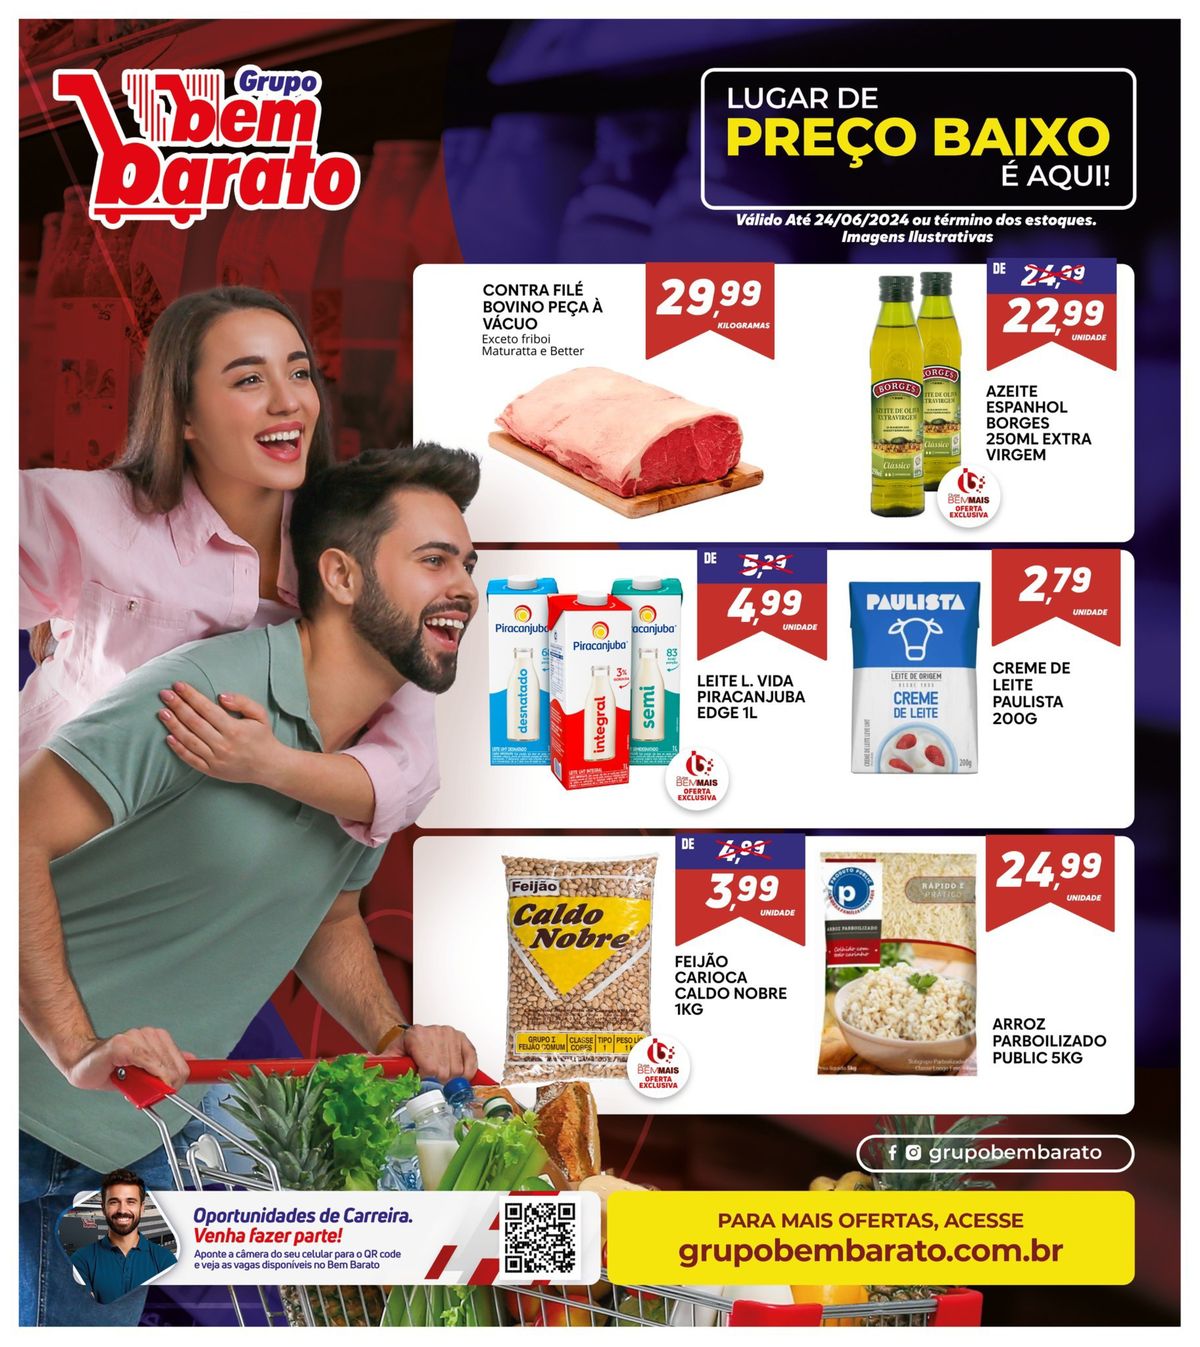 Promoção: Cereal, Contrafilé Bovino, Azeite Espanhol e mais